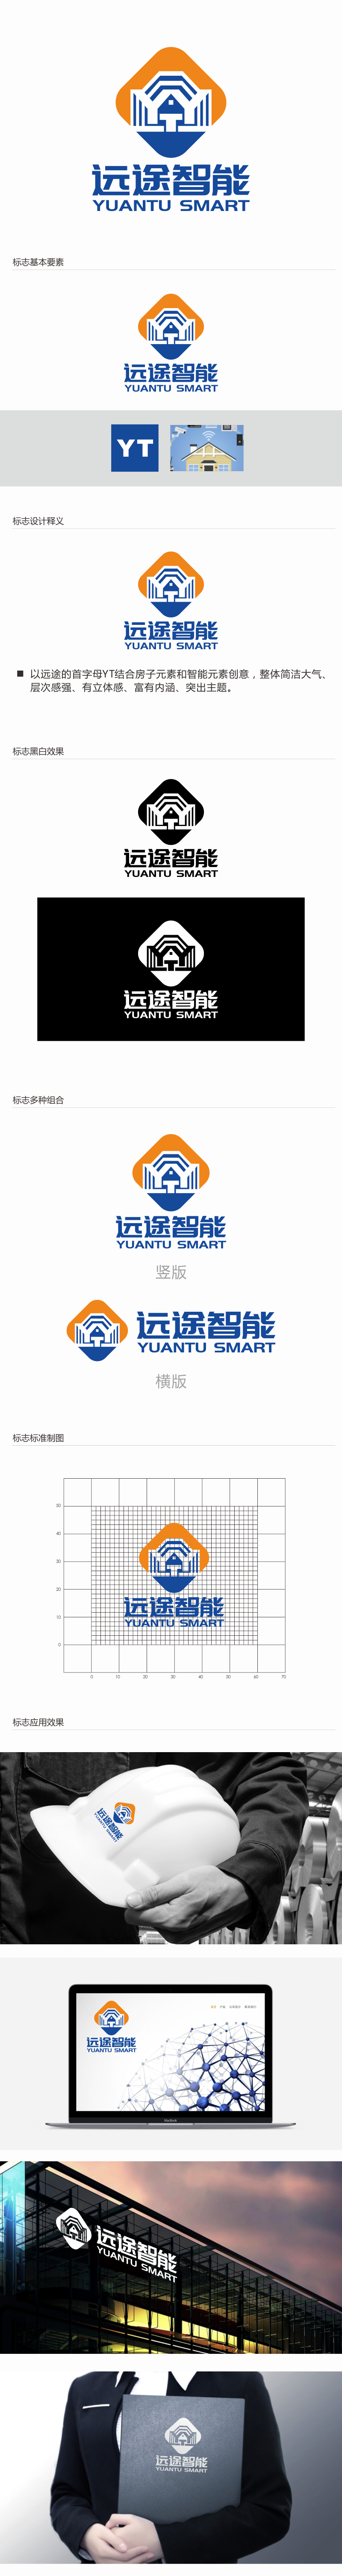 林思源的江苏远途智能装配房有限公司logo设计